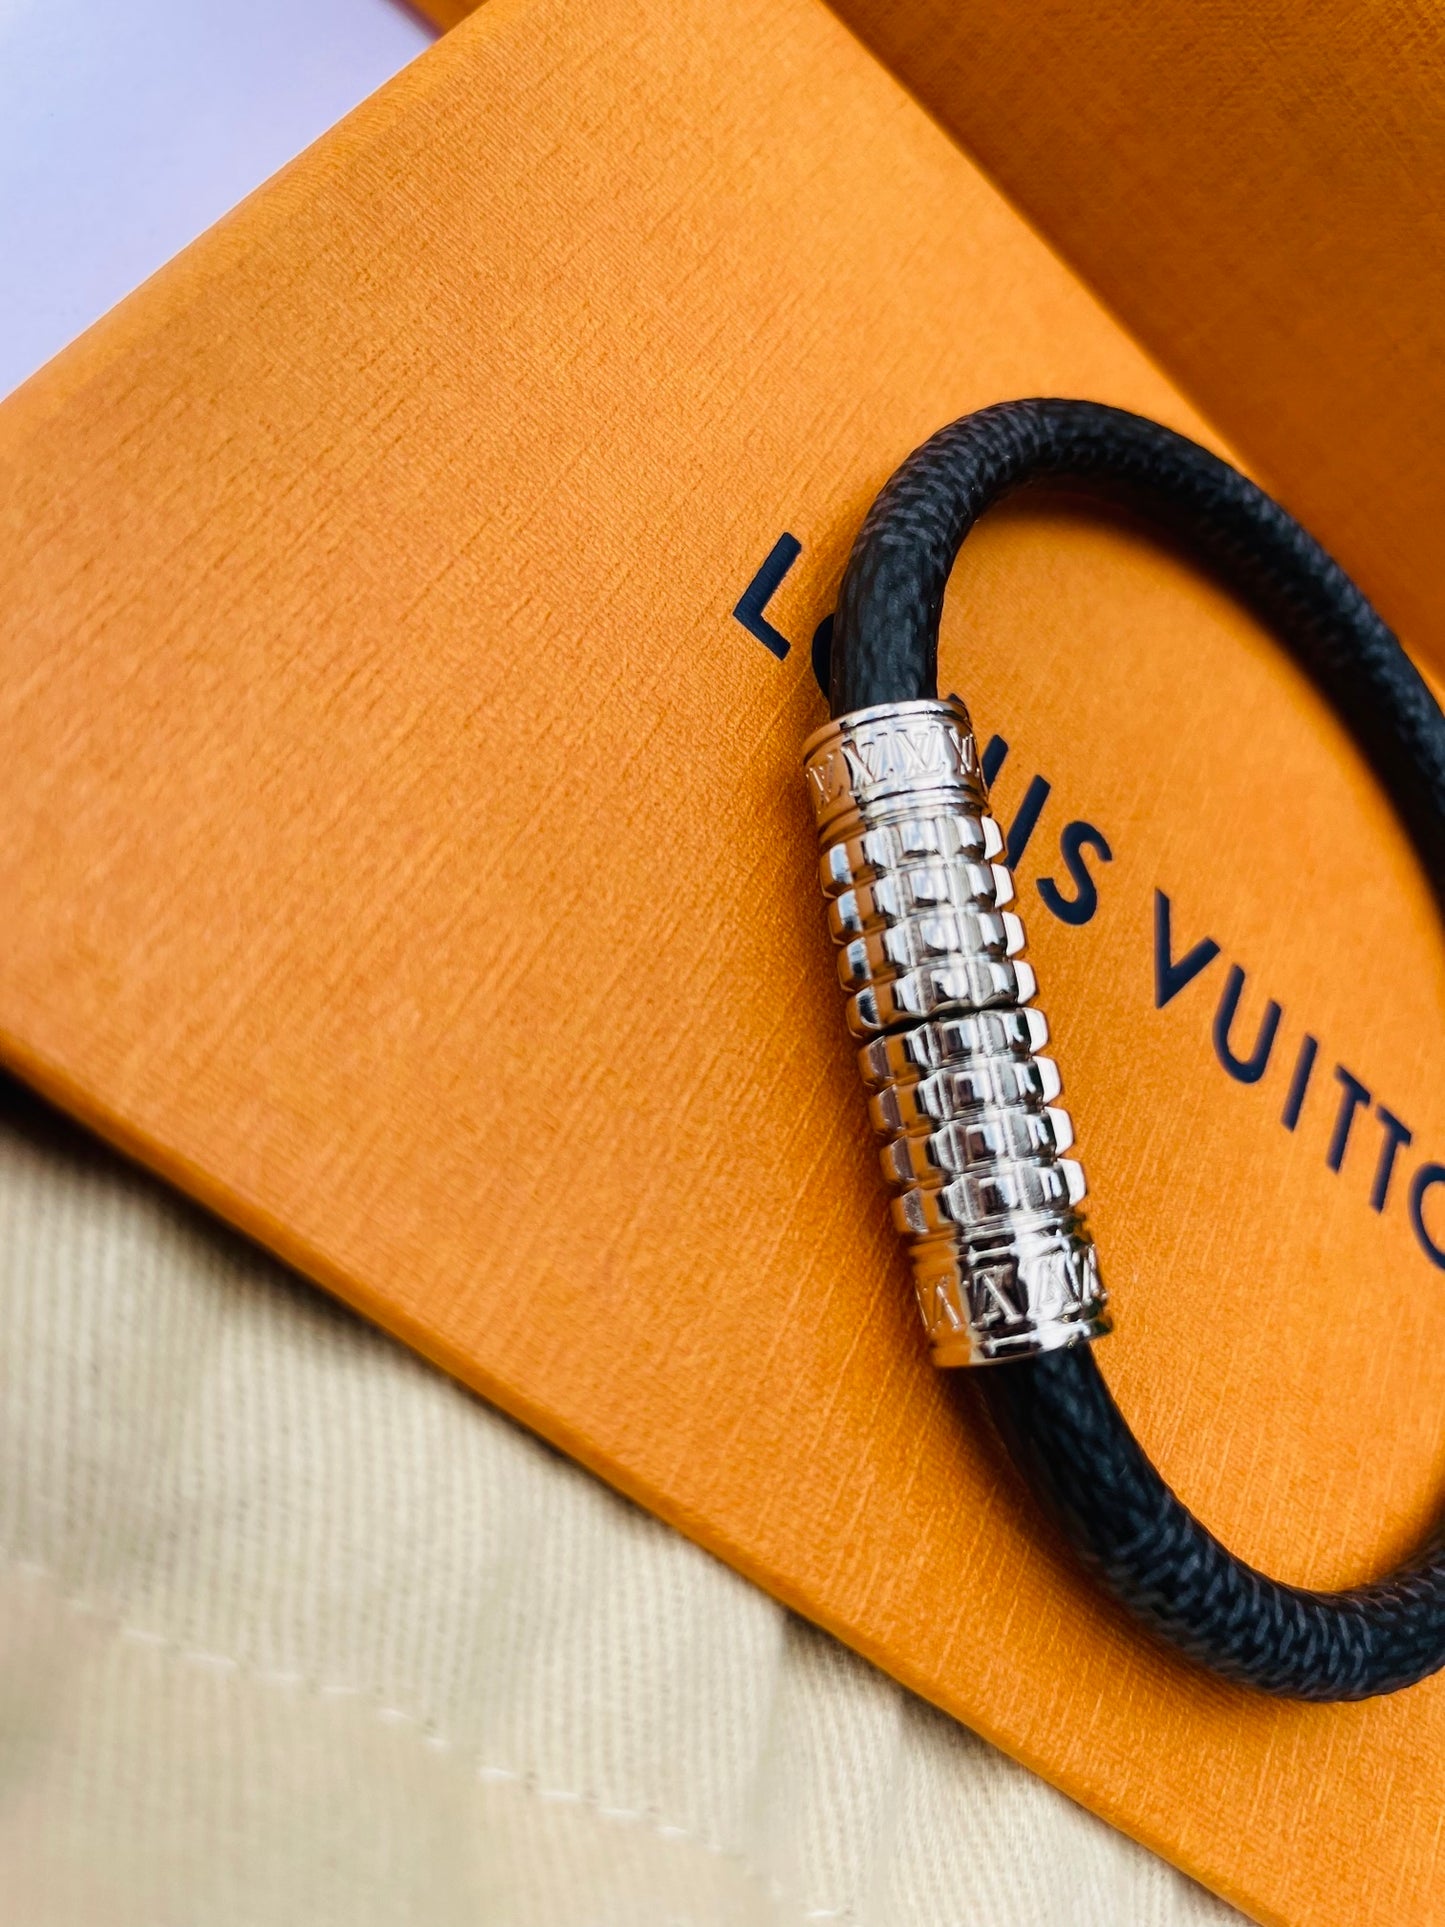 Louis Vuitton bracelet